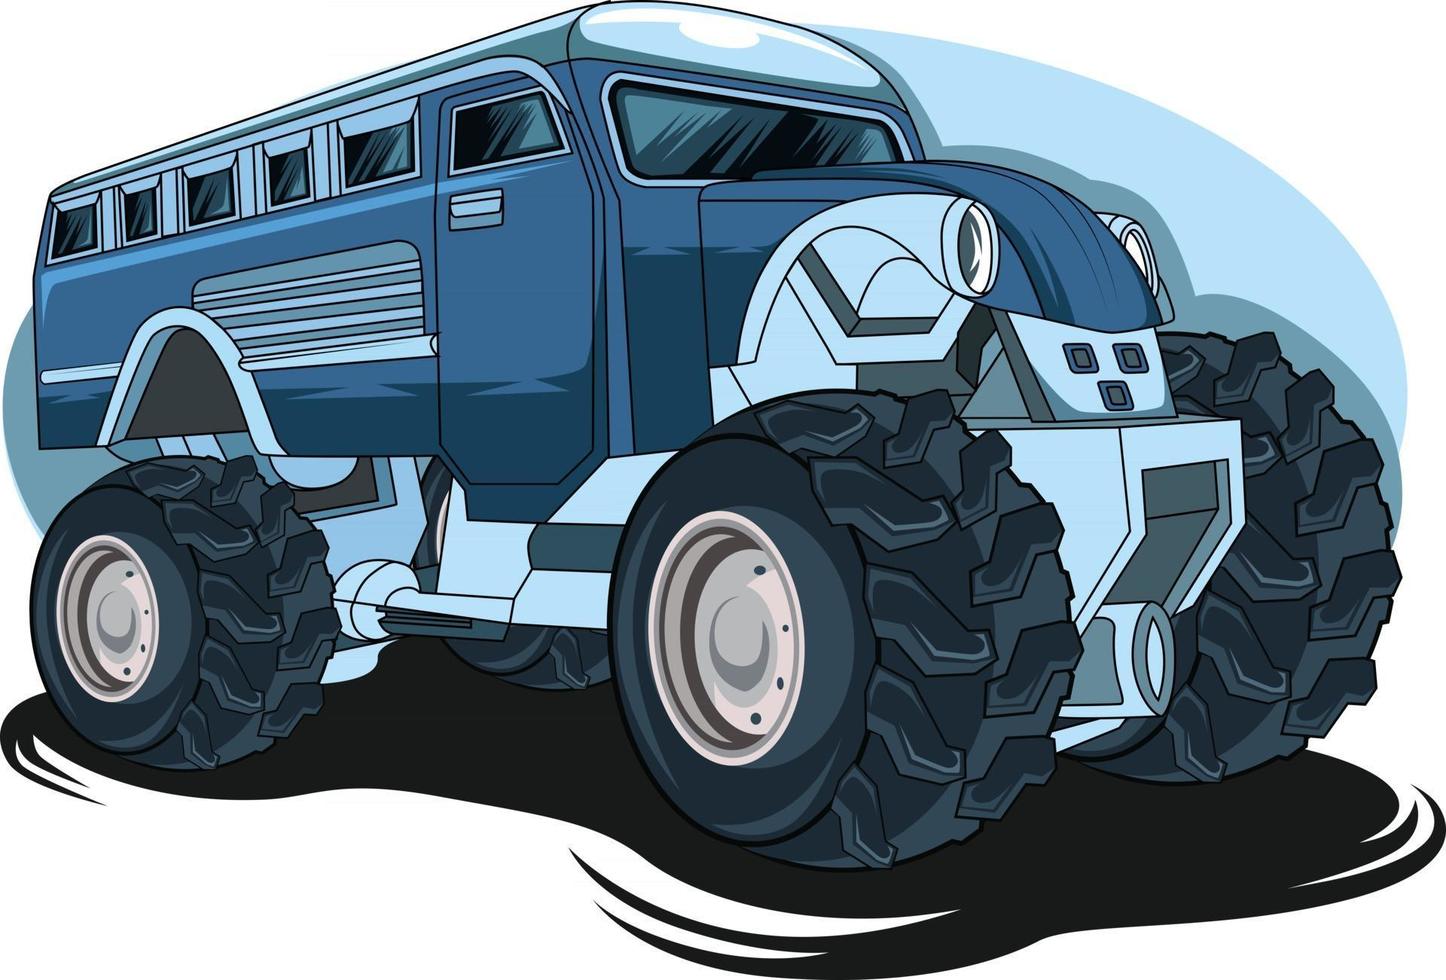 72. big truck monster truck illustration vector